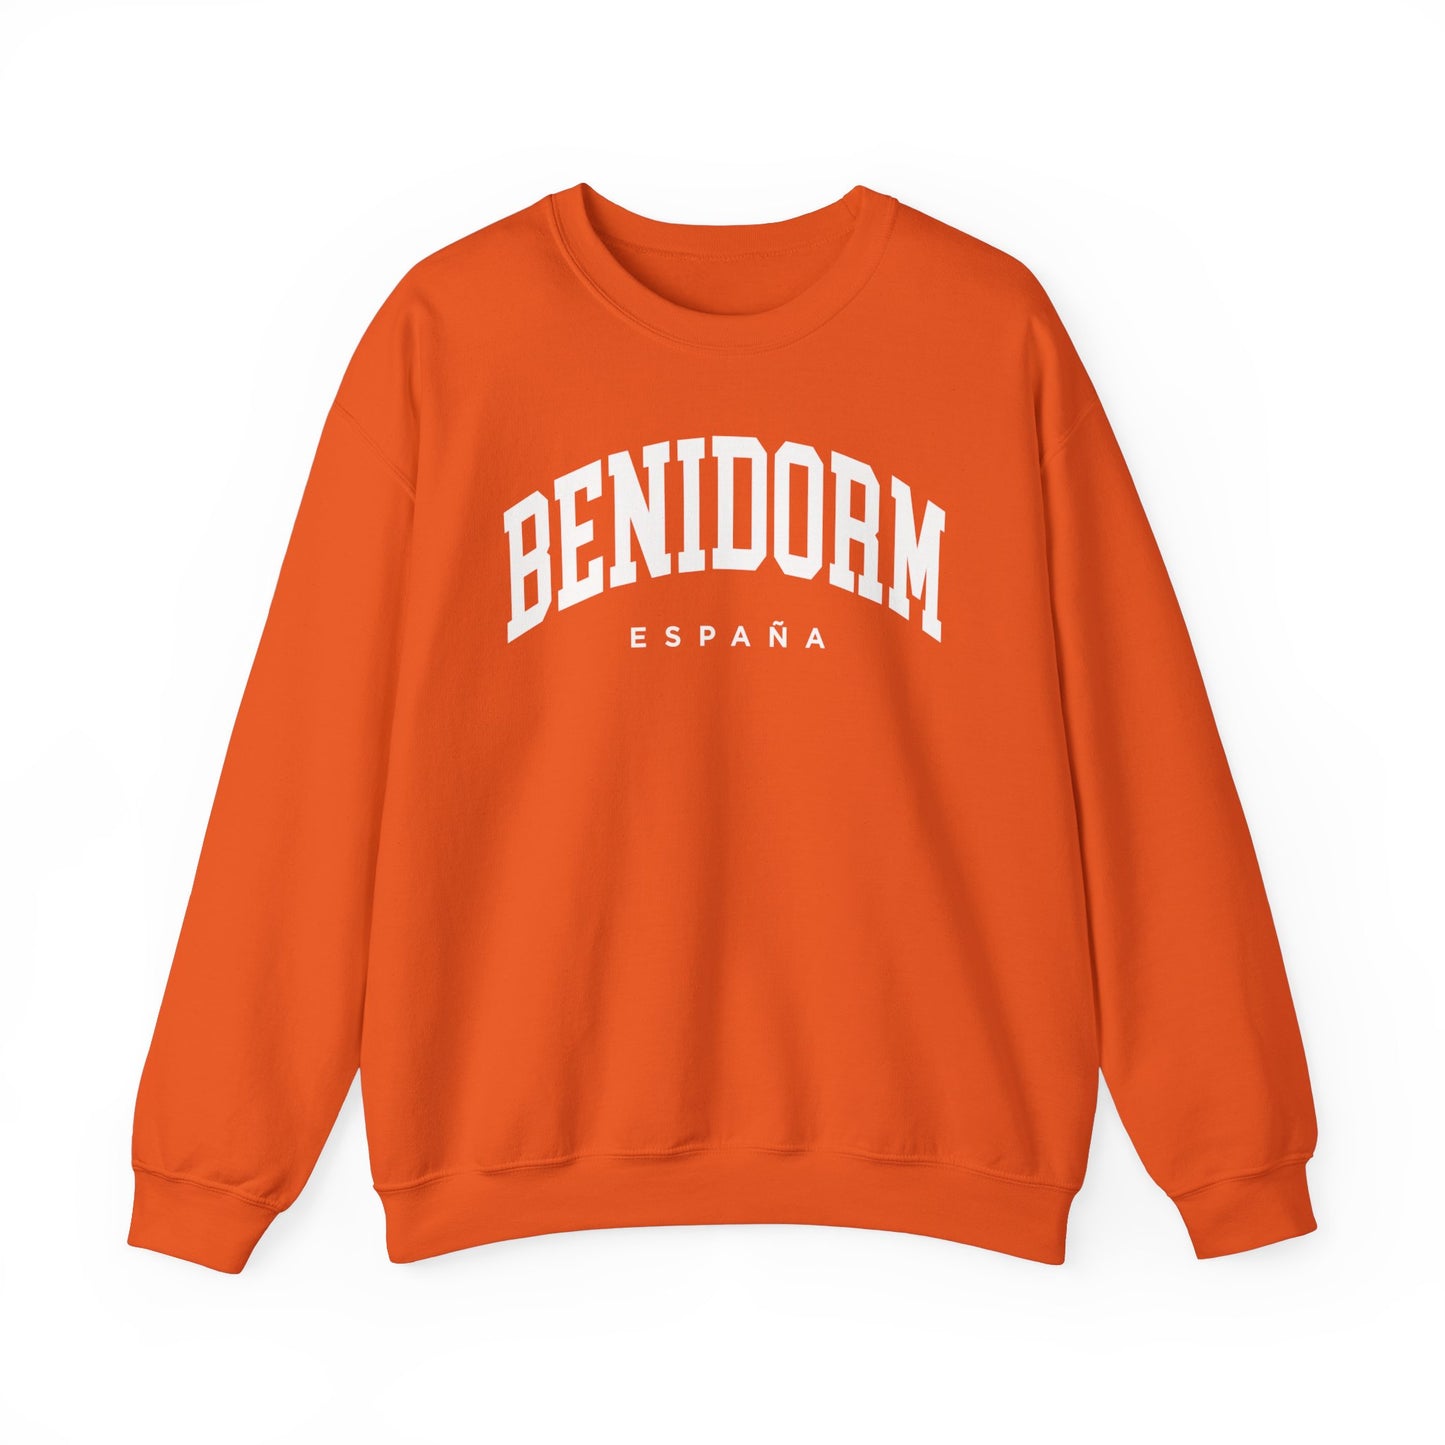 Benidorm Spain Sweatshirt